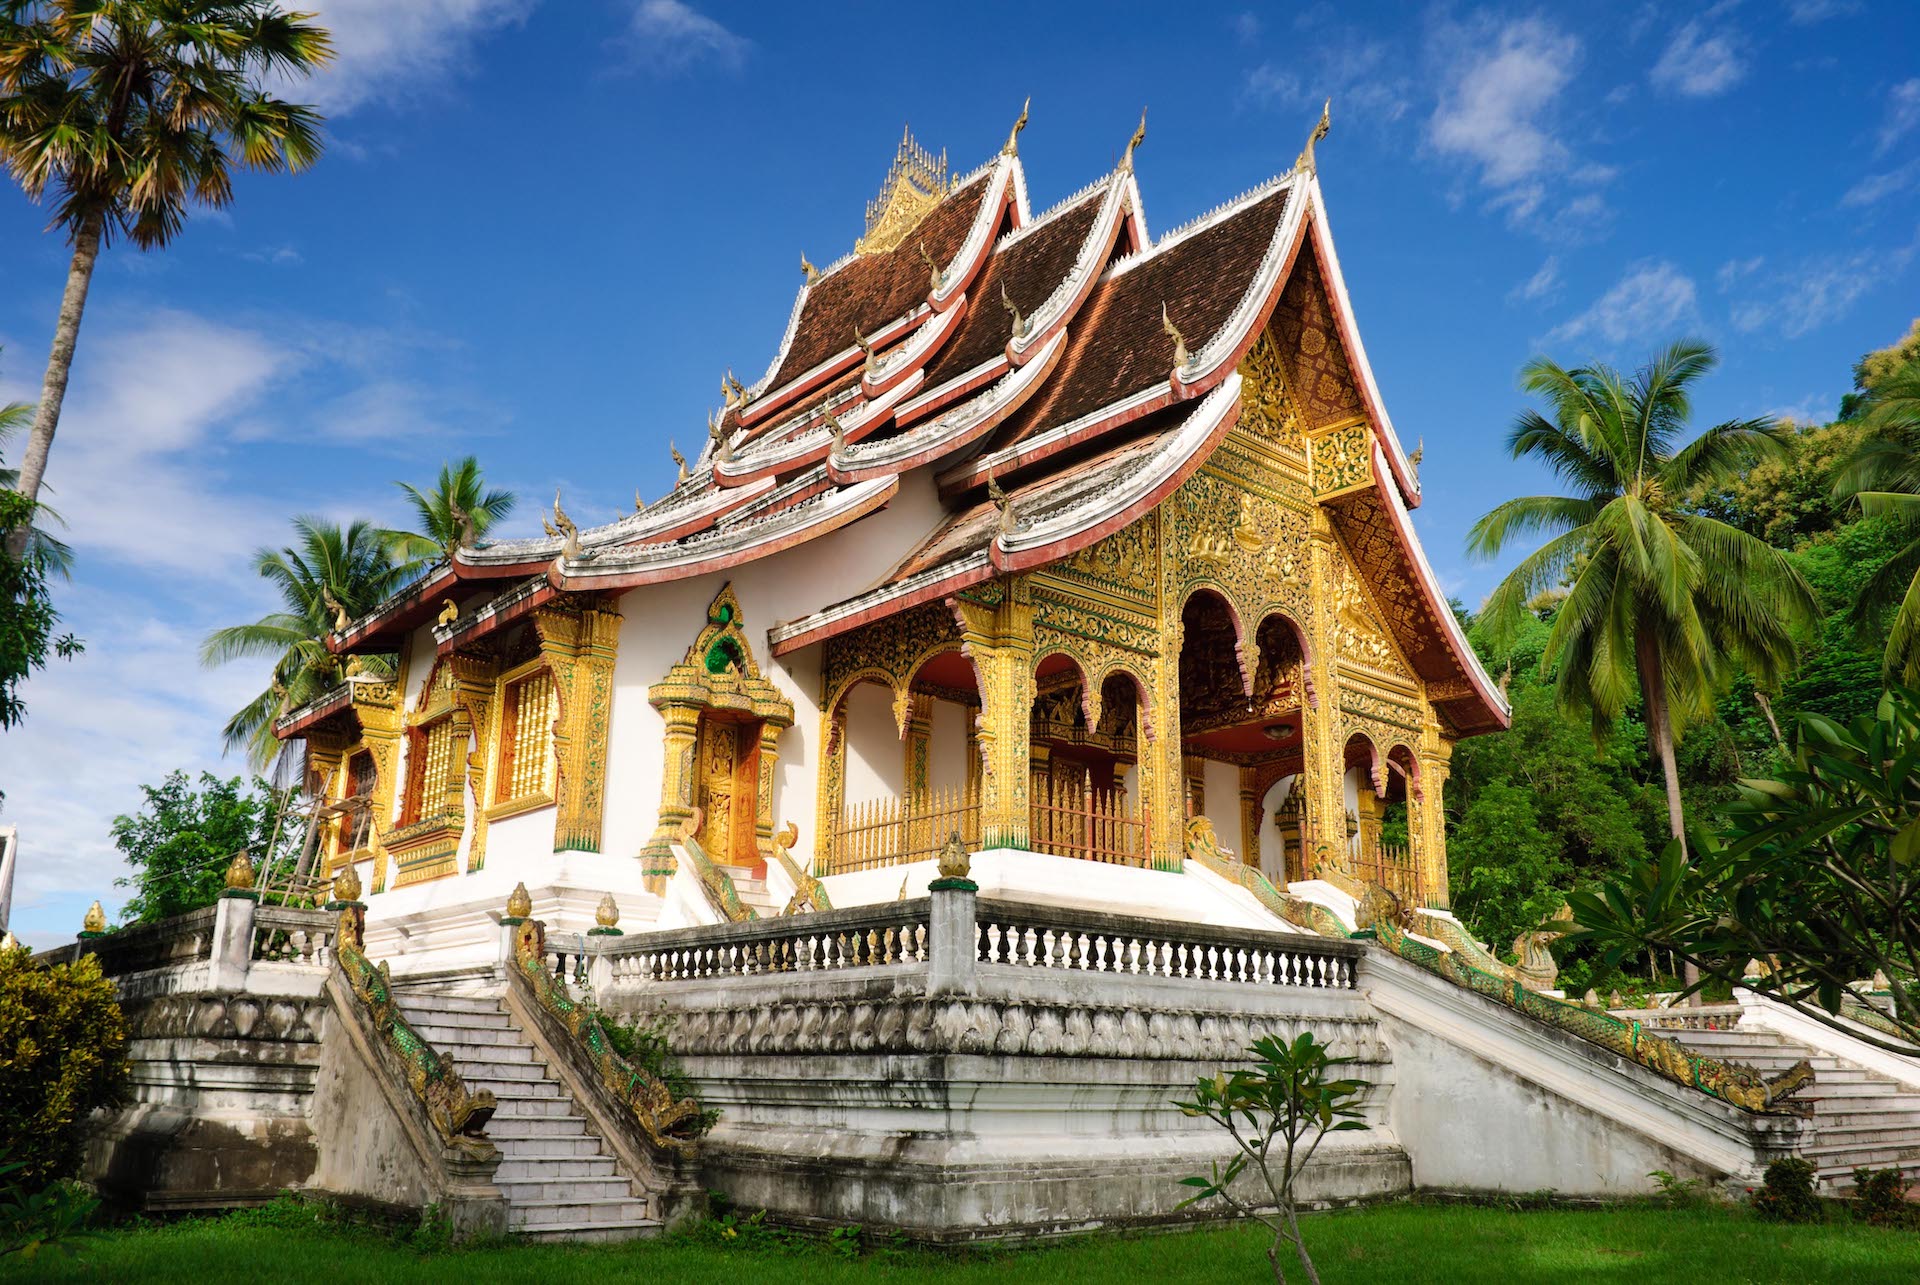 Em Luang Prabang o Ho Kham, o Palácio Real Dourado. Transformado em museu, mostra o retrato perfeito de tantos anos de convivência: arquitetura e artes francesas misturadas ao imaginário budista